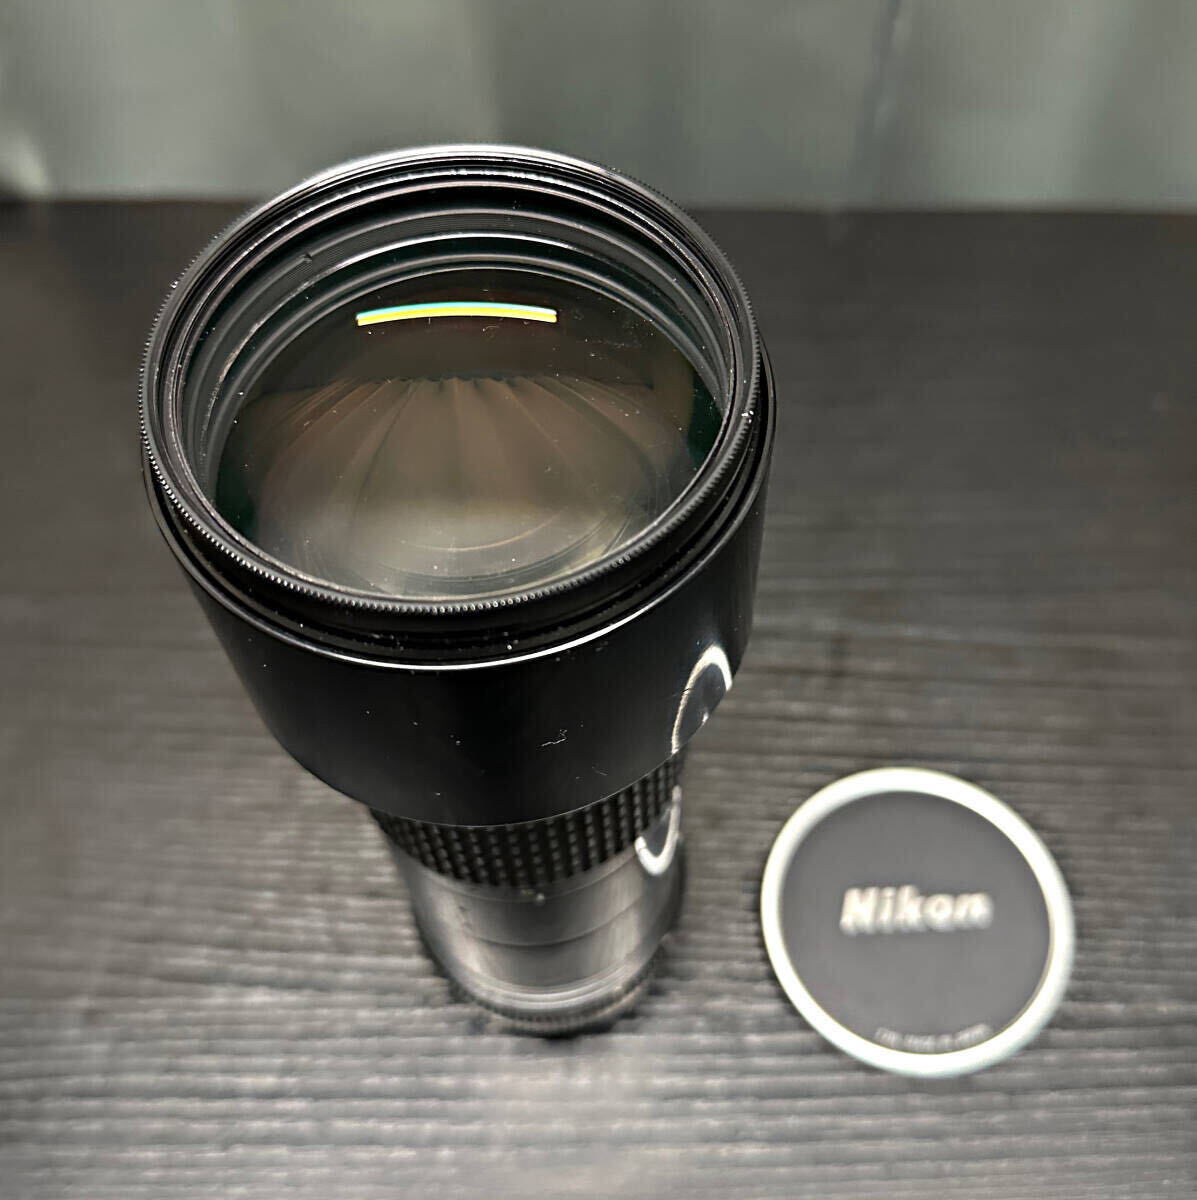 Nikon/ Nikon * lens *NIKKOR*ED* telephoto lens *1:4.5*300mm*210923* junk *040192